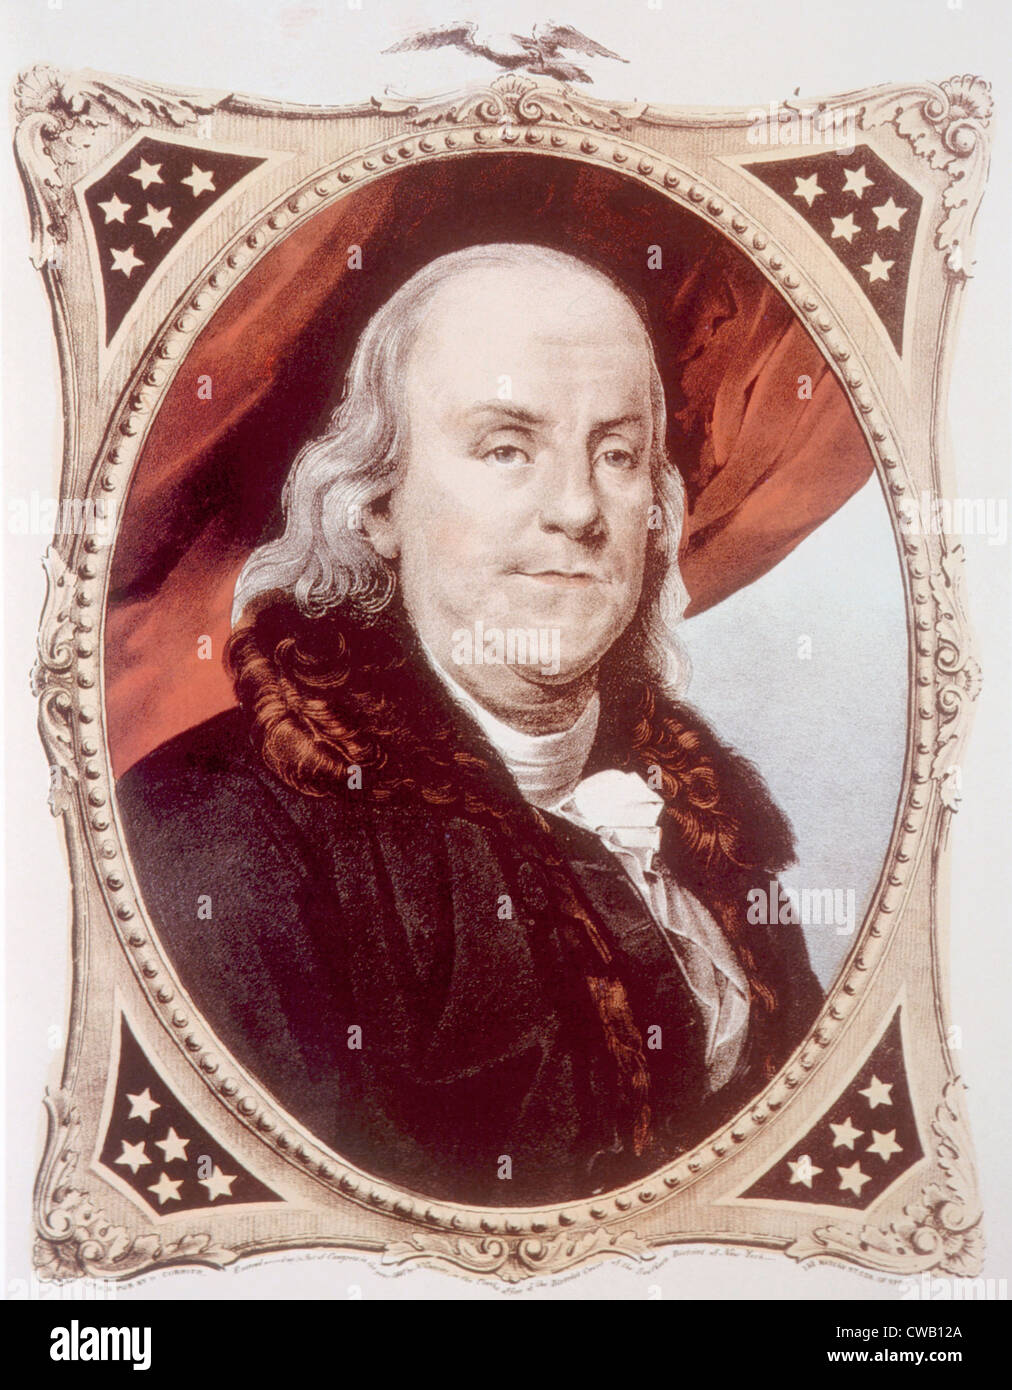 Benjamin Franklin (1706-1790), peinture par Nathaniel Currier, 1847 Banque D'Images